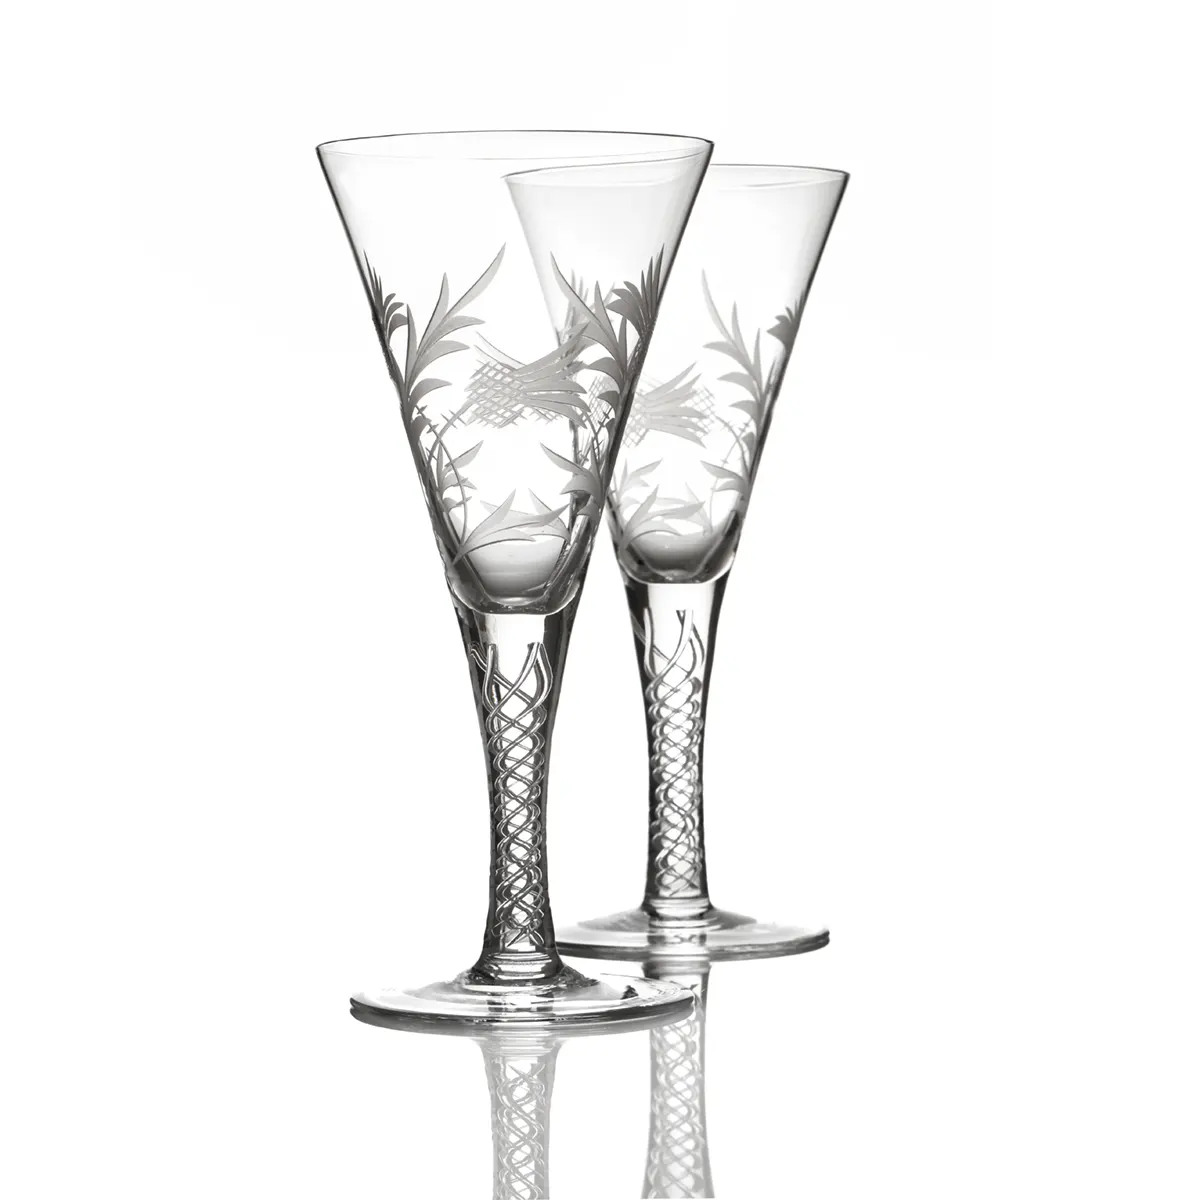 Flower of Scotland - Schottische Distel - 2 x Jakobiten Weinglas aus Kristallglas